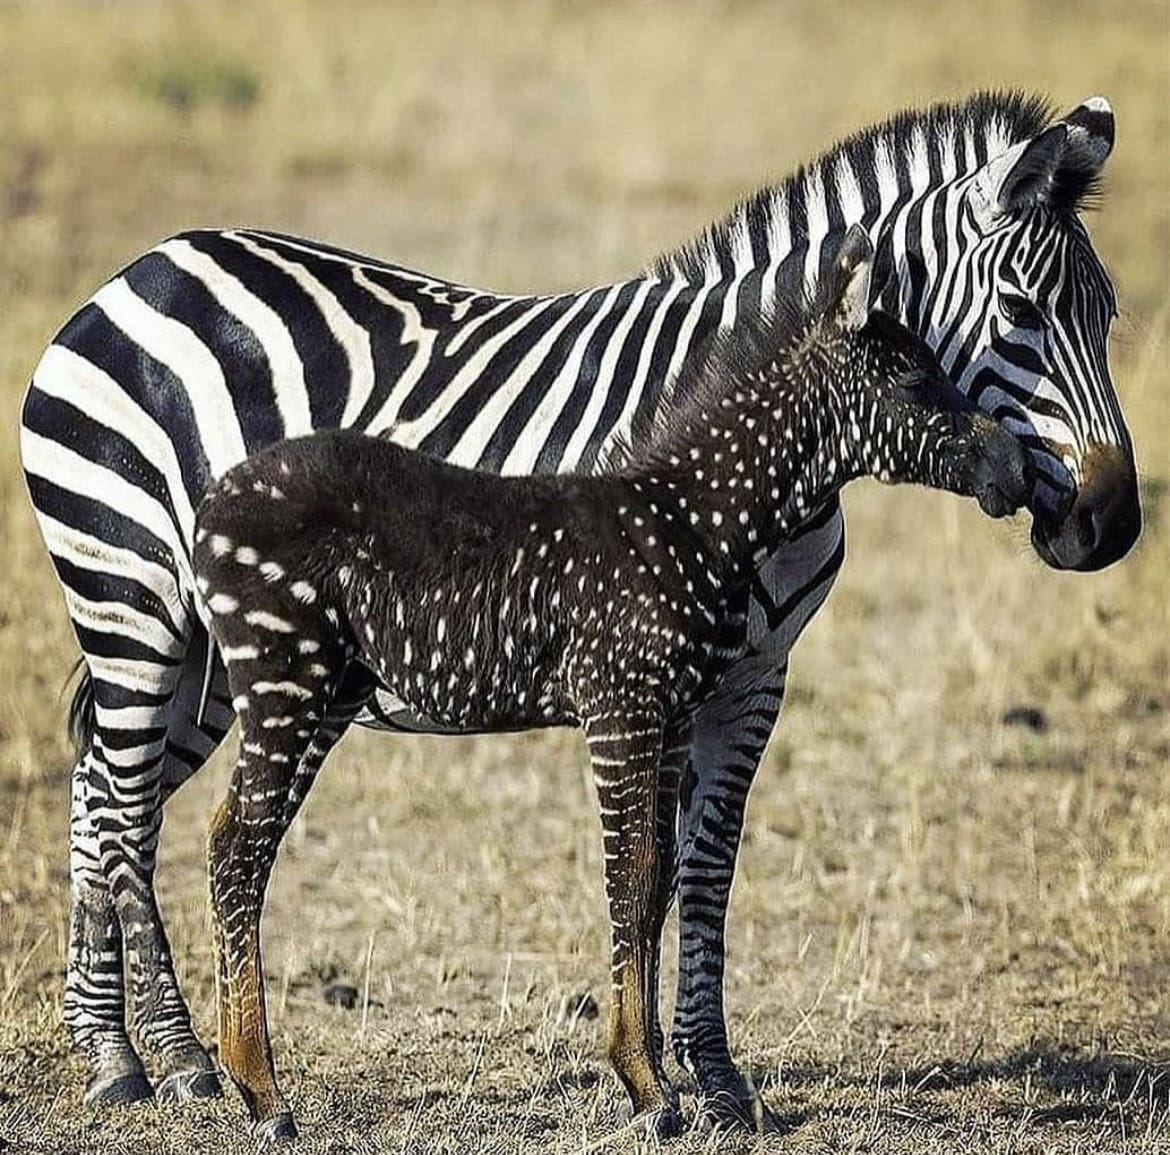 Polka dot zebra